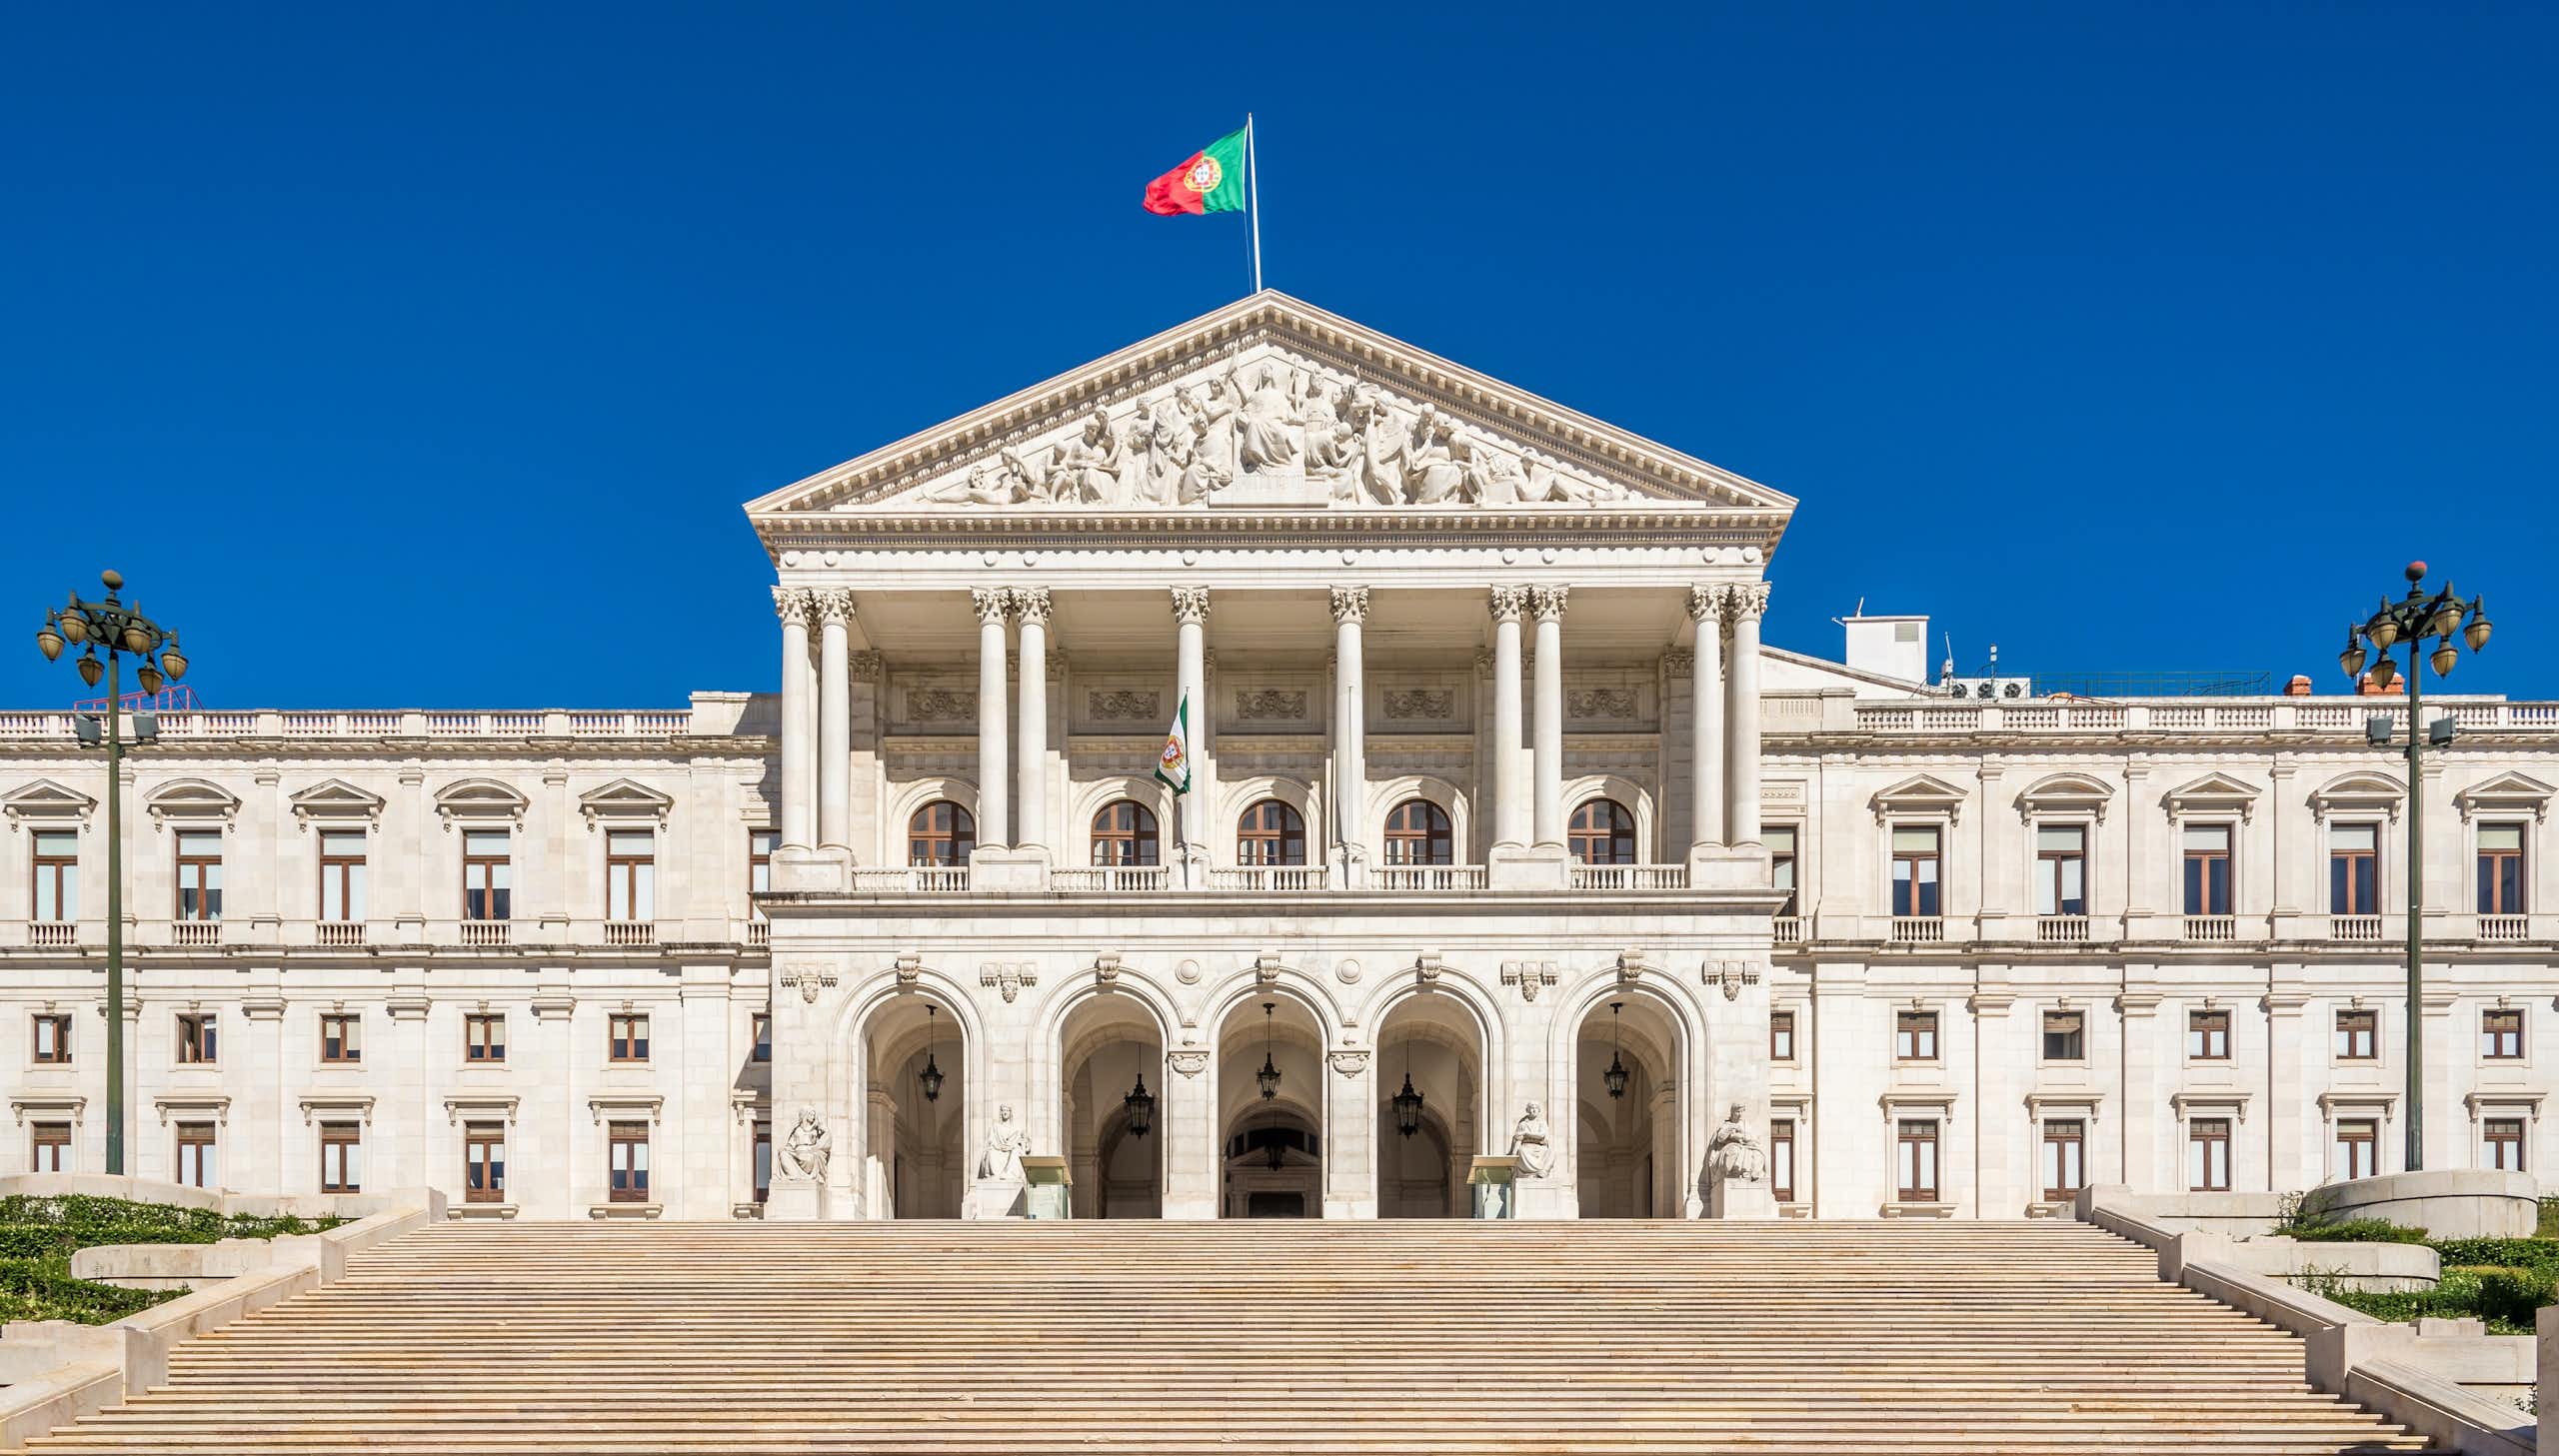 Edificio del Parlamento en Lisboa, Portugal.